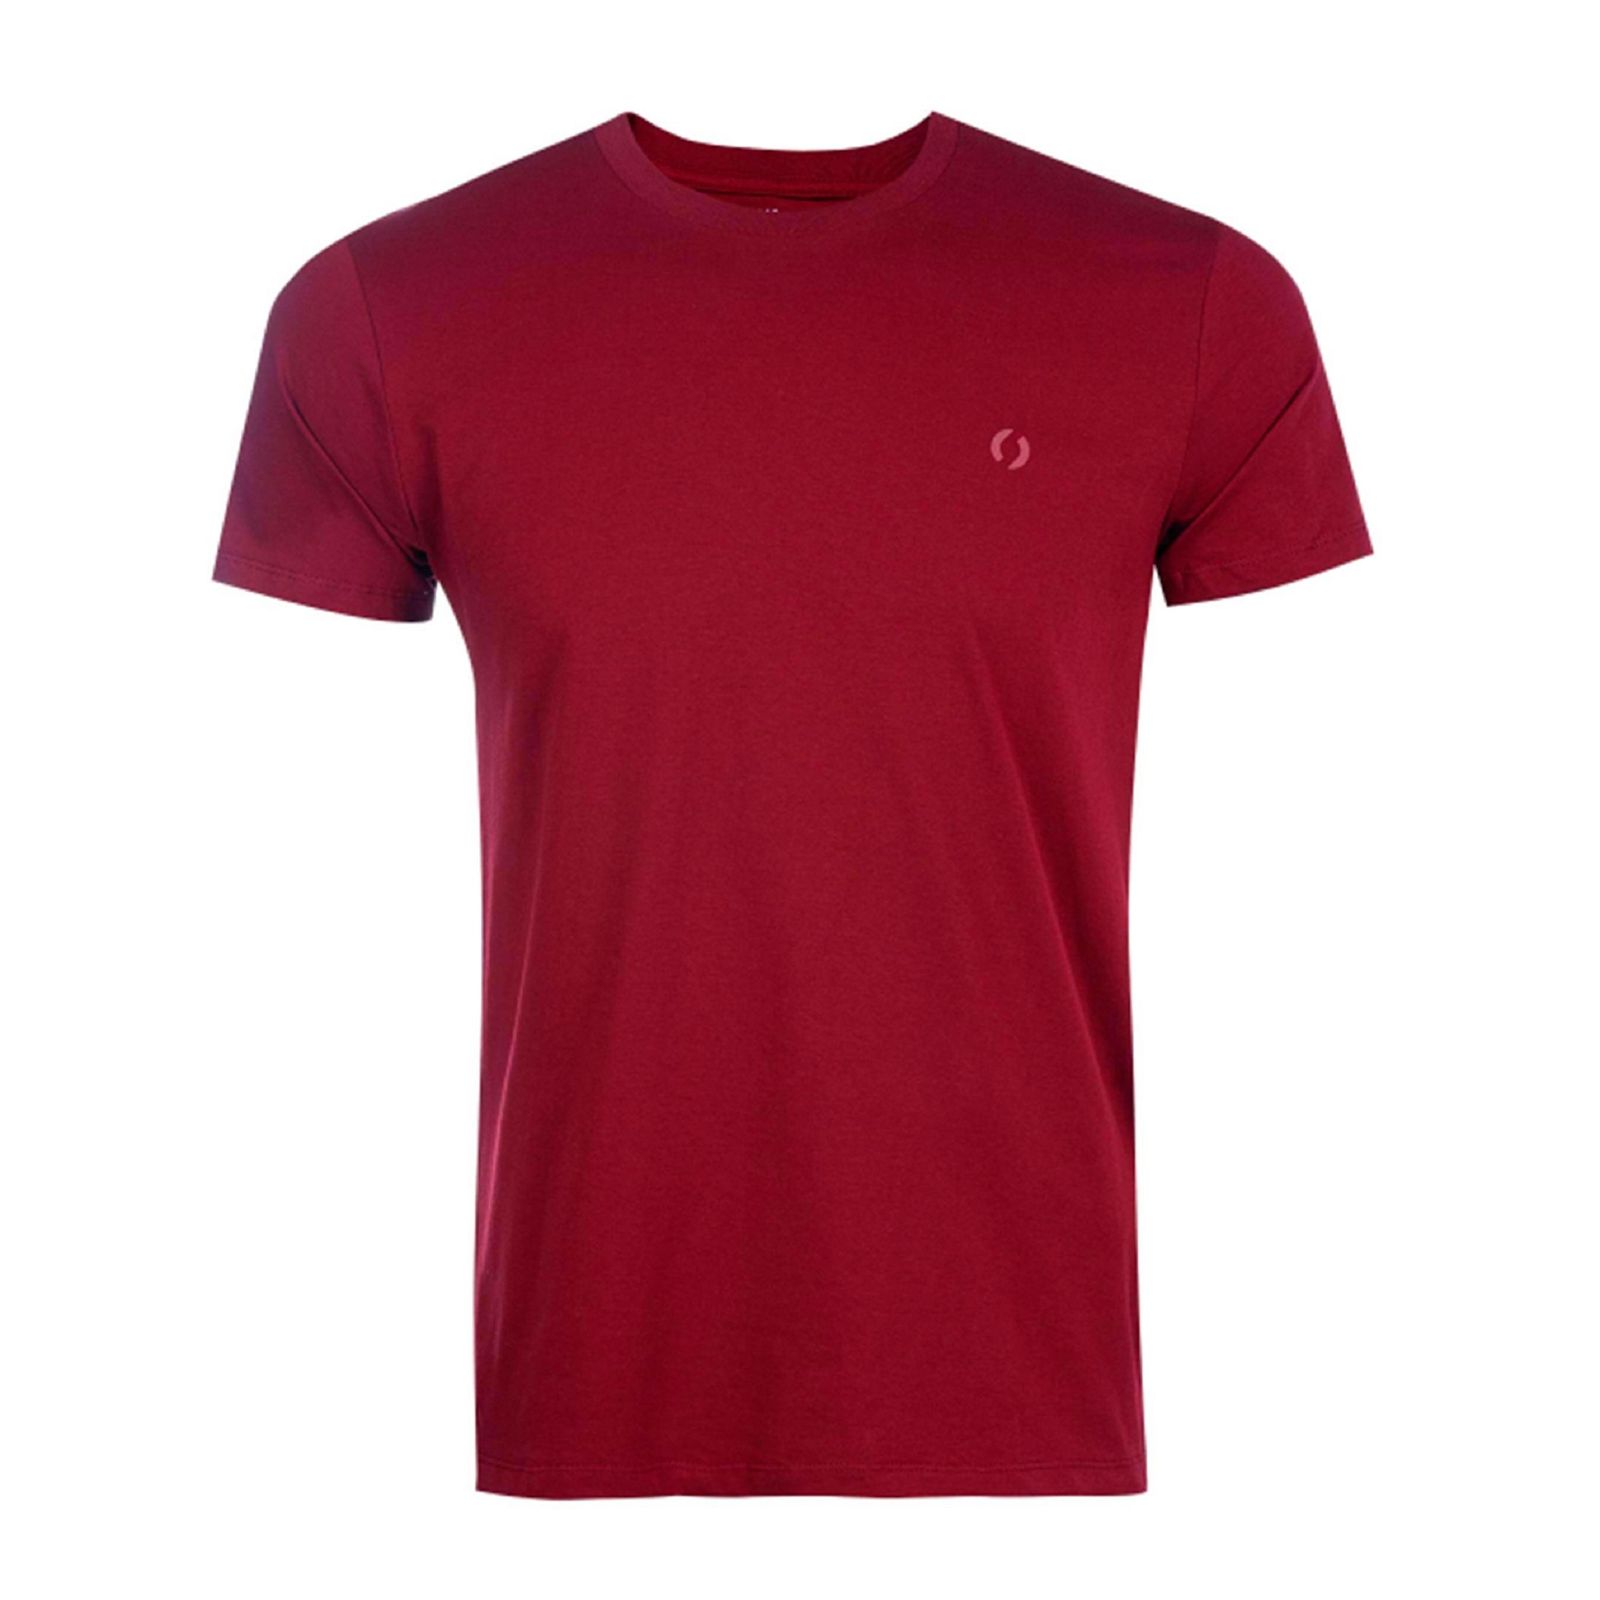 تی شرت آستین کوتاه مردانه جوتی جینز مدل یقه گرد کد 1551198 رنگ قرمز تیره